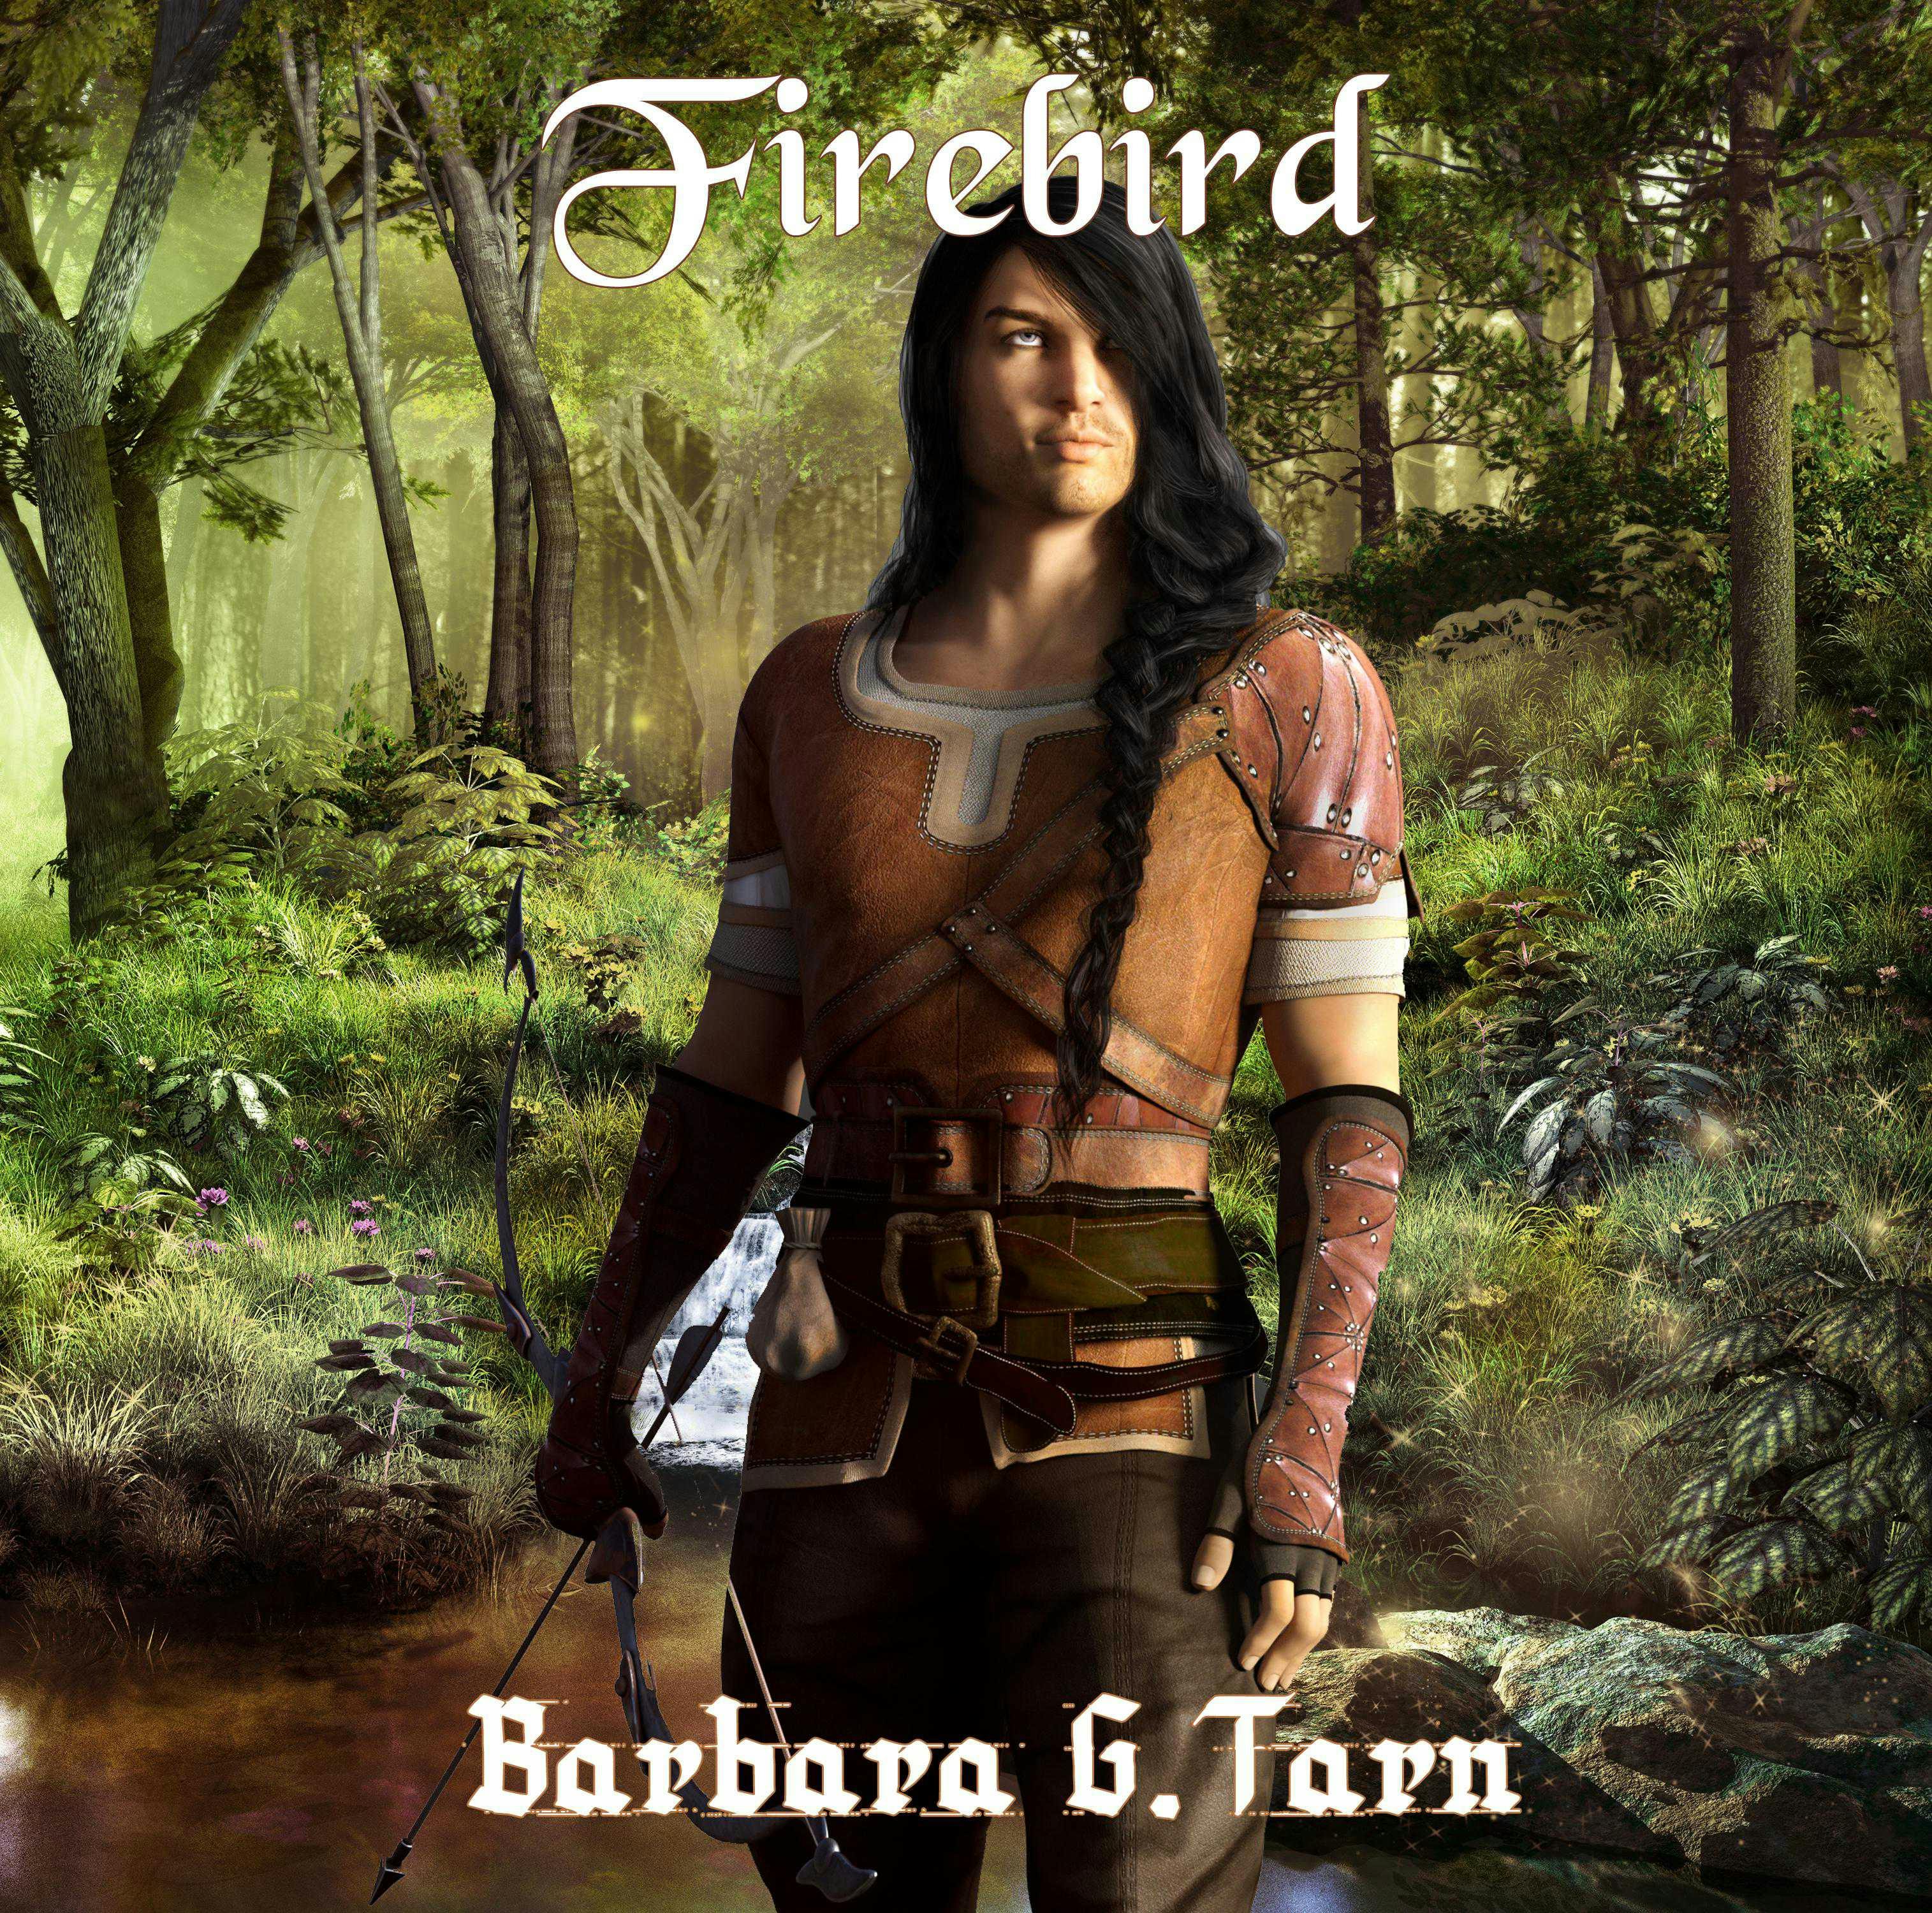 Firebird - undefined